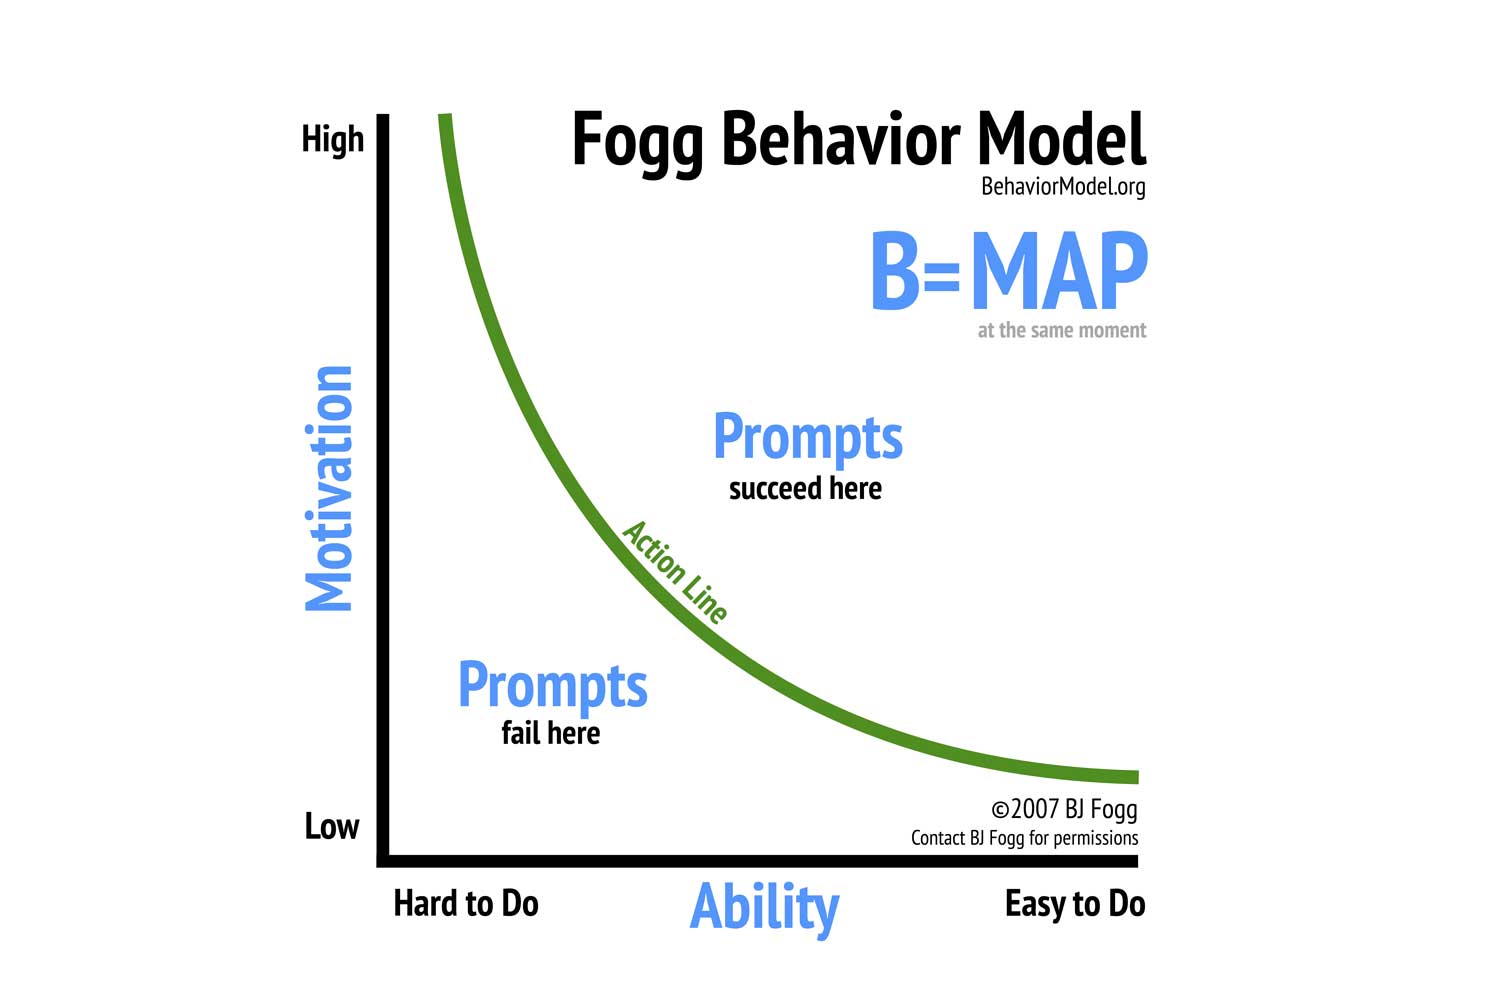 BJ Fogg's Behavioral Model